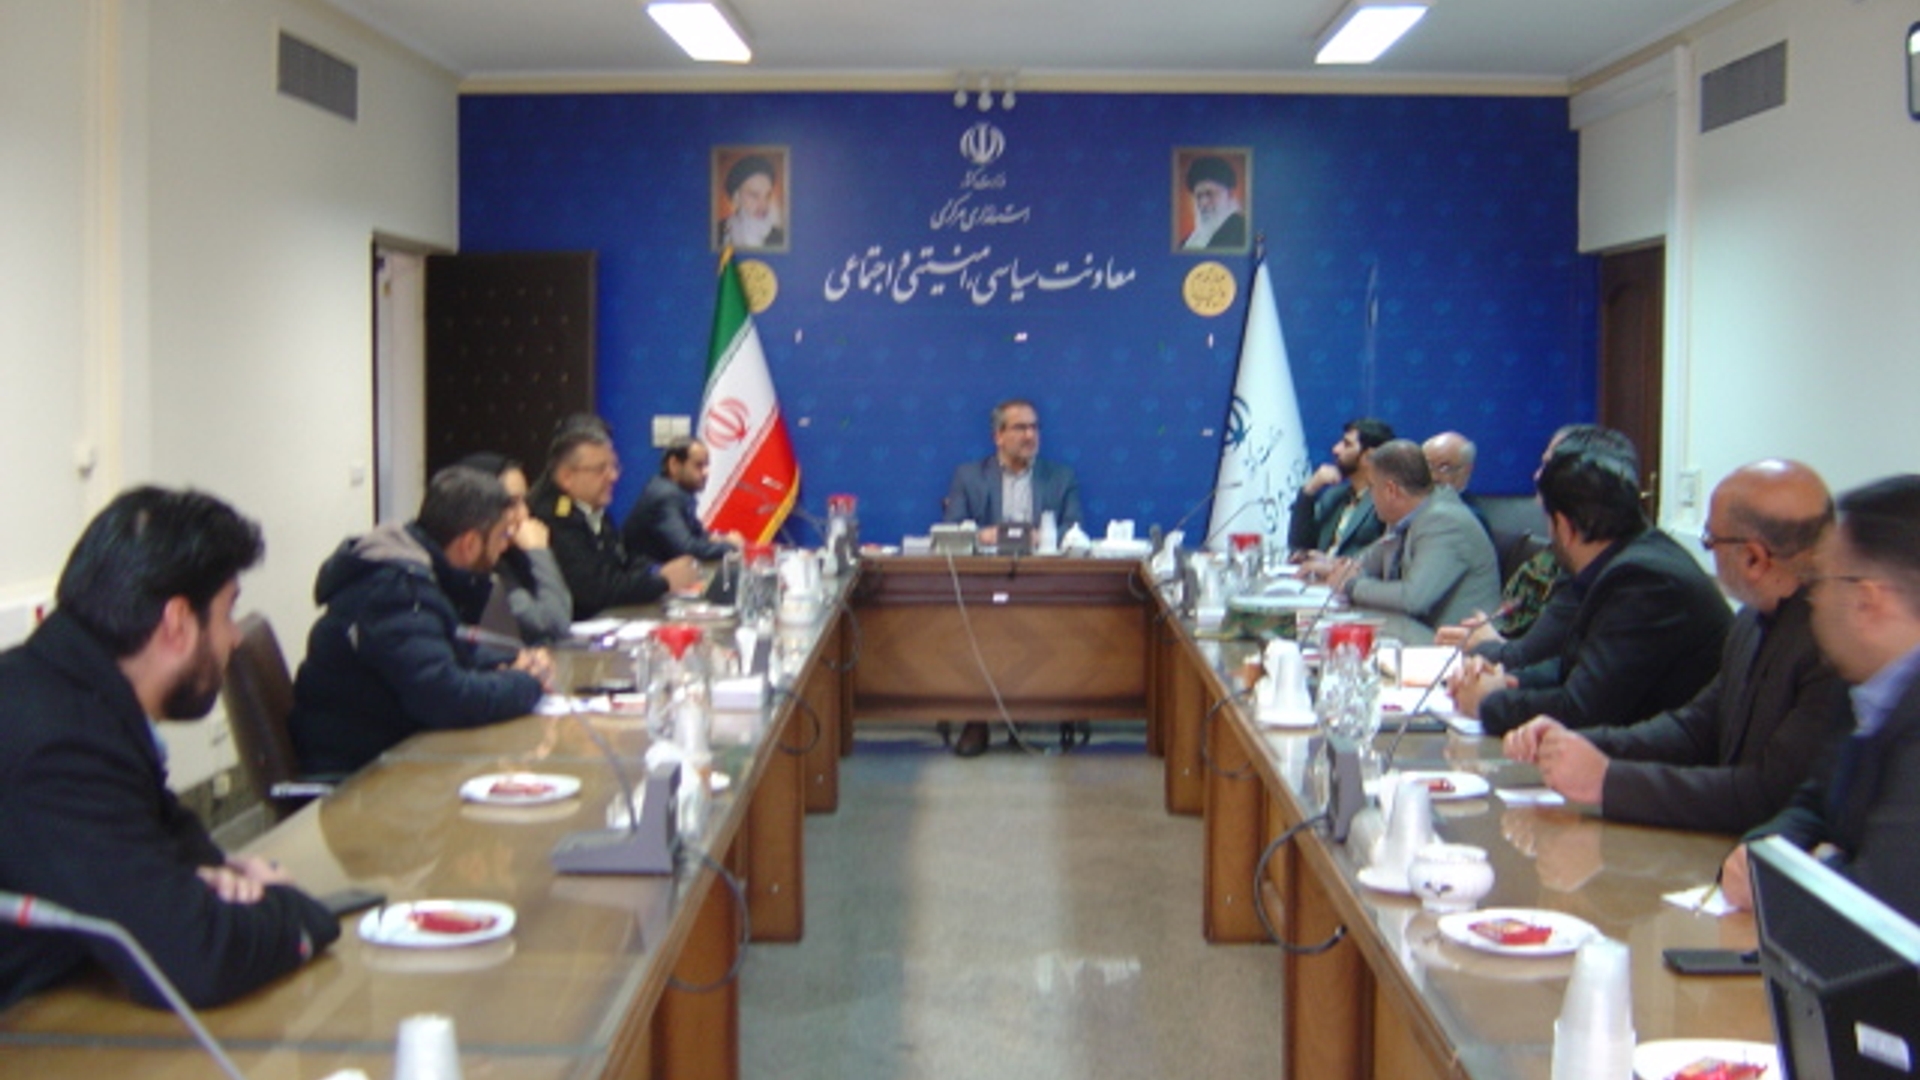 جلسه کمیسیون امنیت ورزش استان ساعت 8 صبح روز پنجشنبه مورخ 21-10-1402 به ریاست آقای رحیمی تبار مدیر کل امنیتی و انتظامی برگزار گردید.